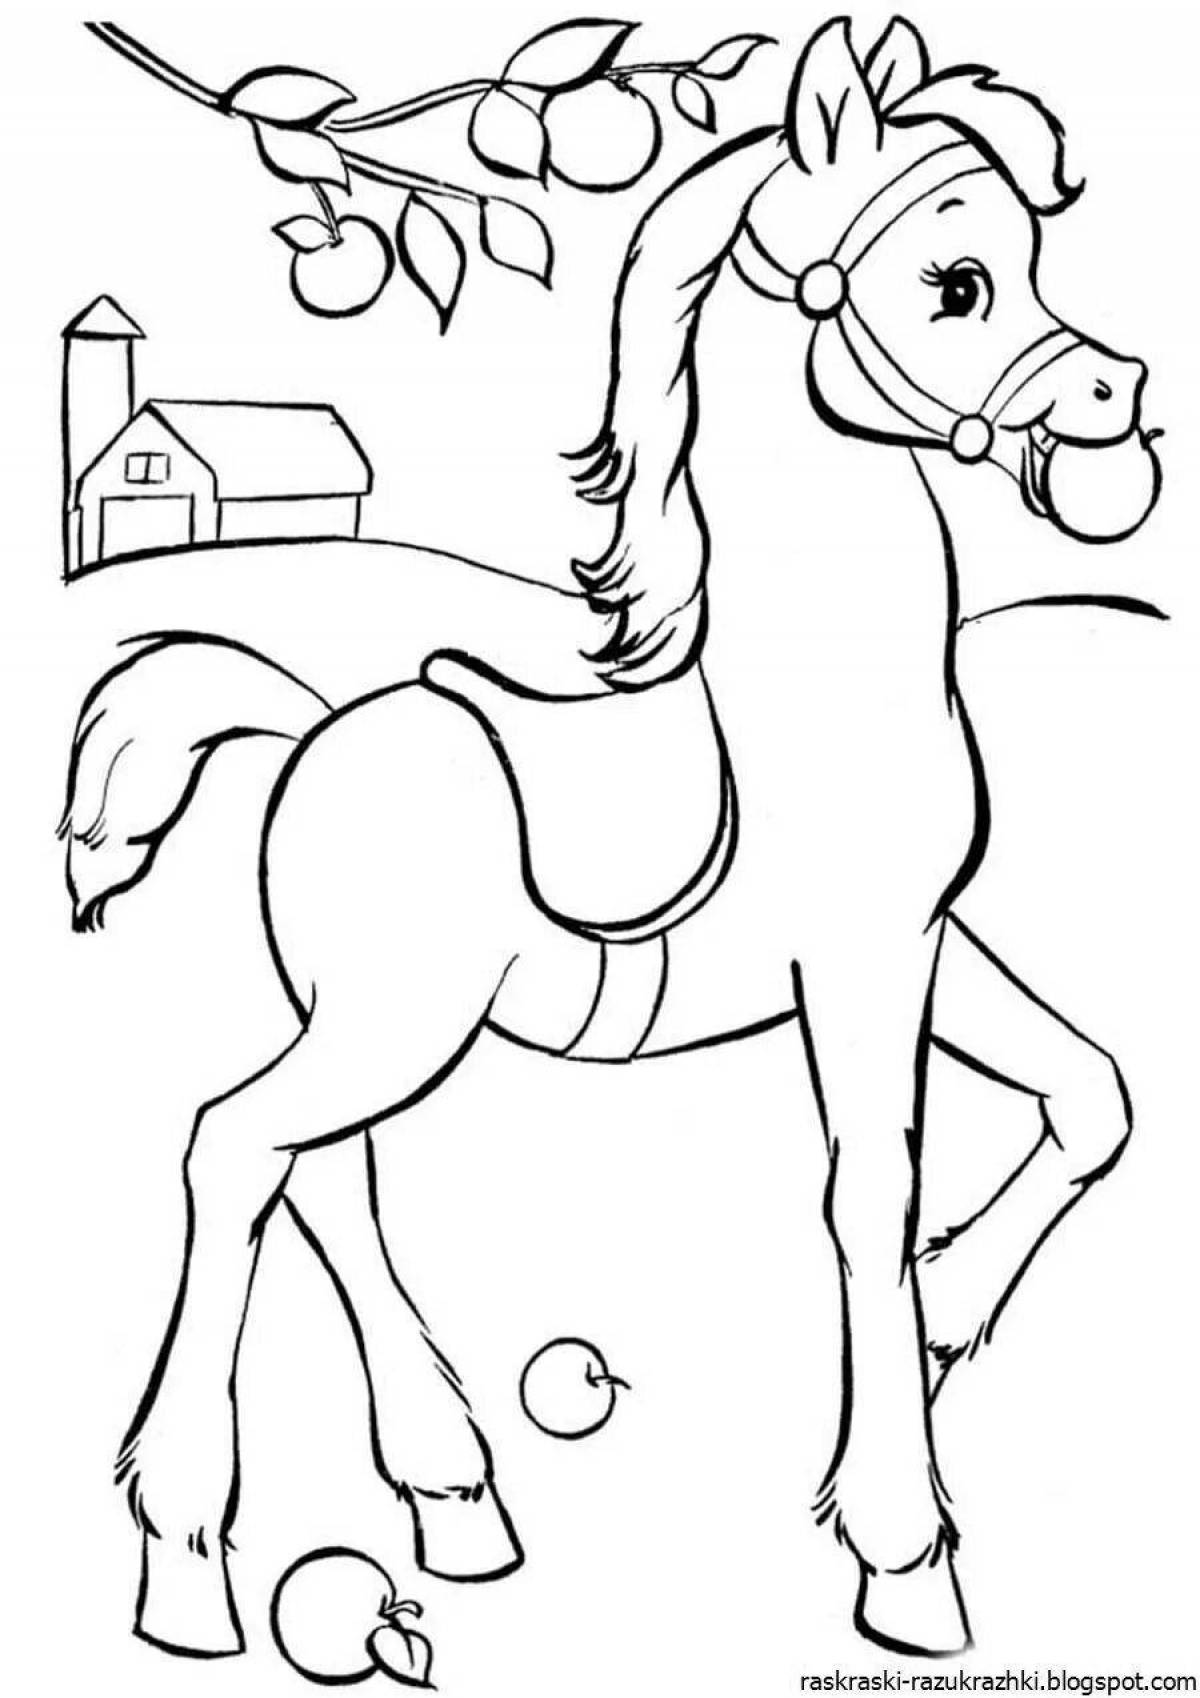 Лучистая раскраска лошадь для детей 6-7 лет